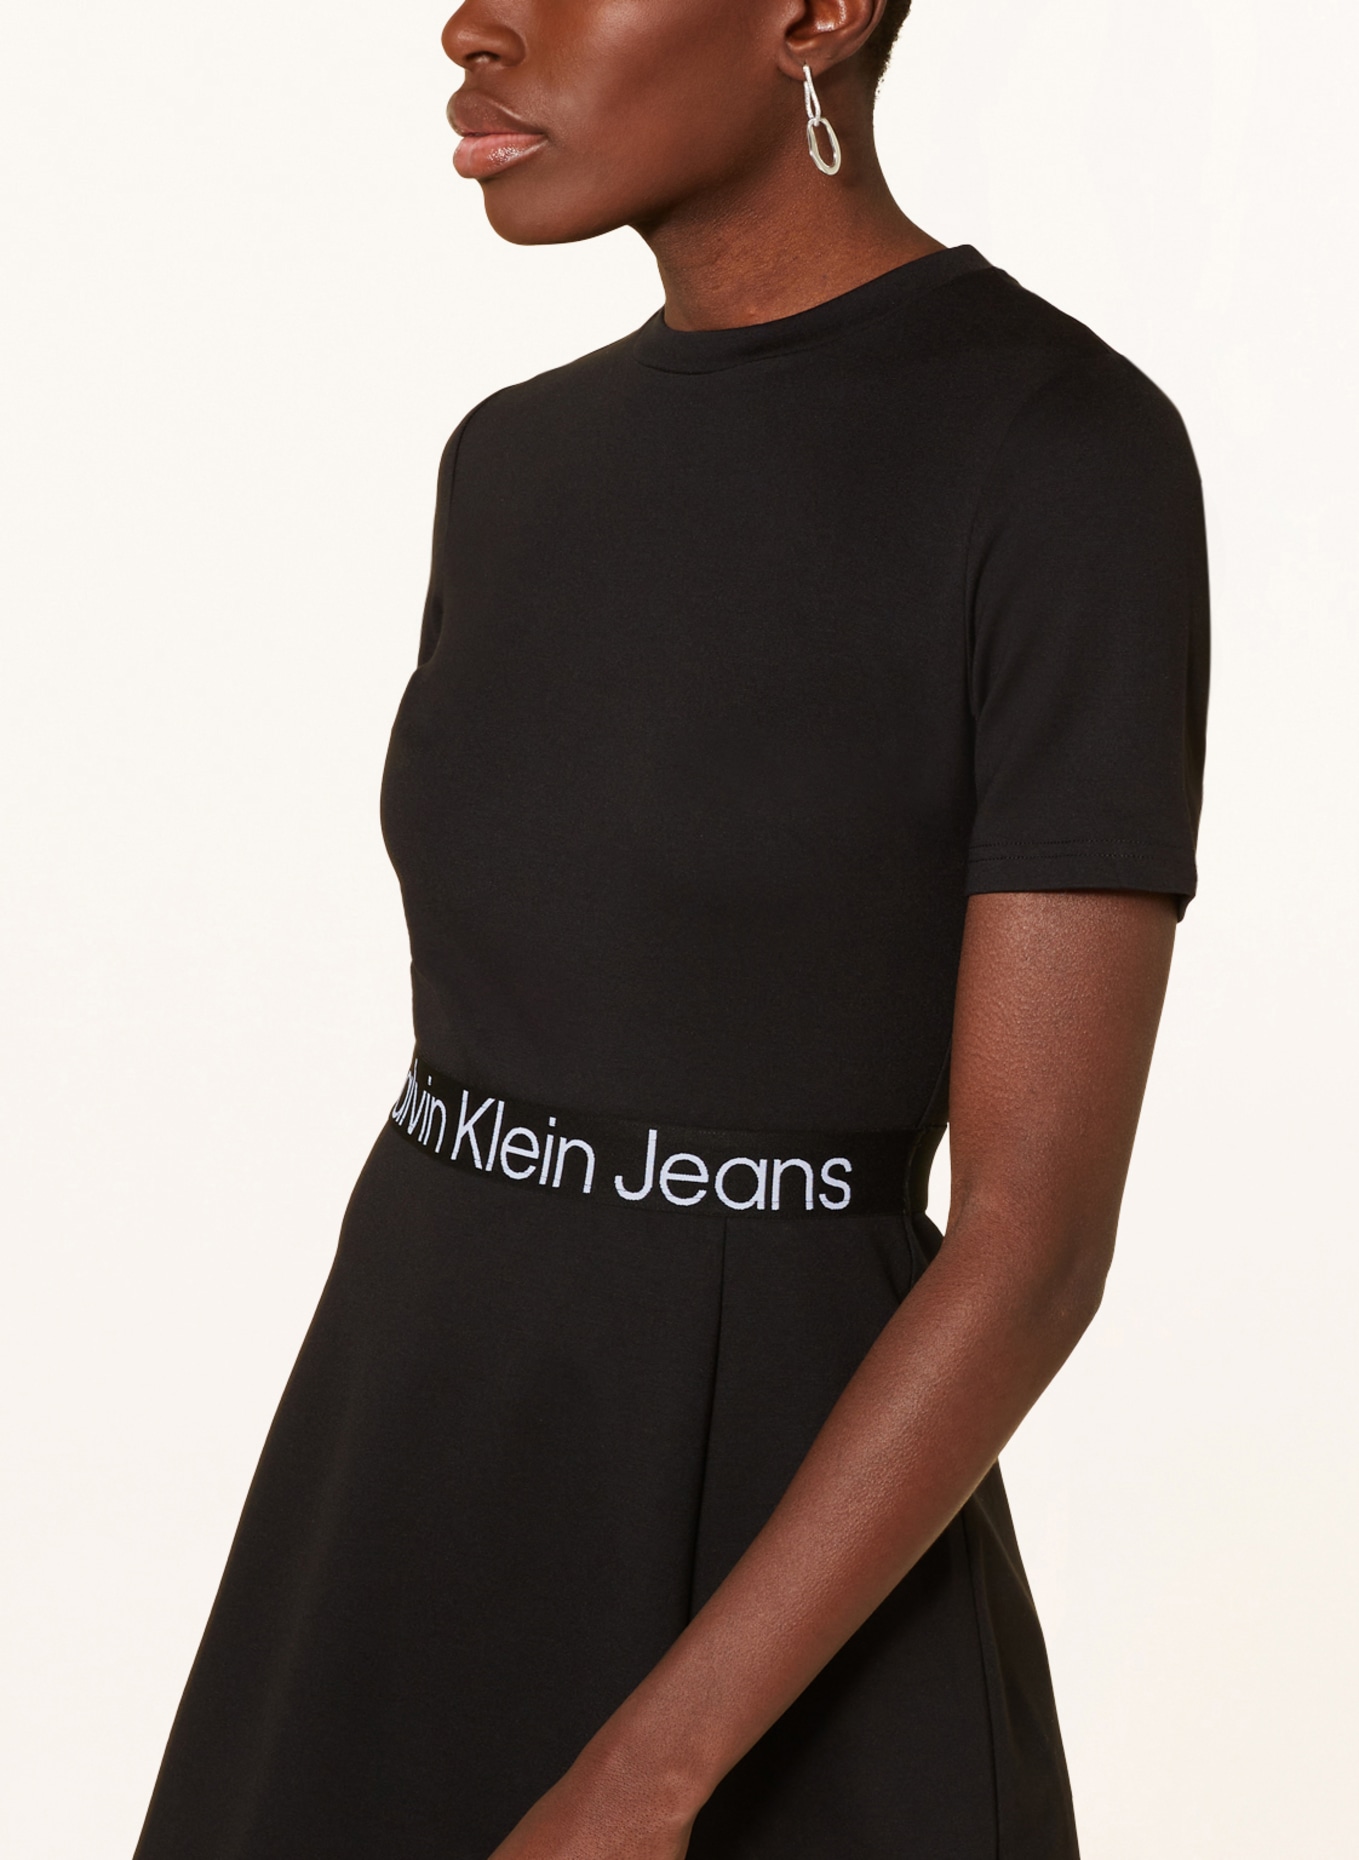 Calvin Klein Jeans Jersey in black dress